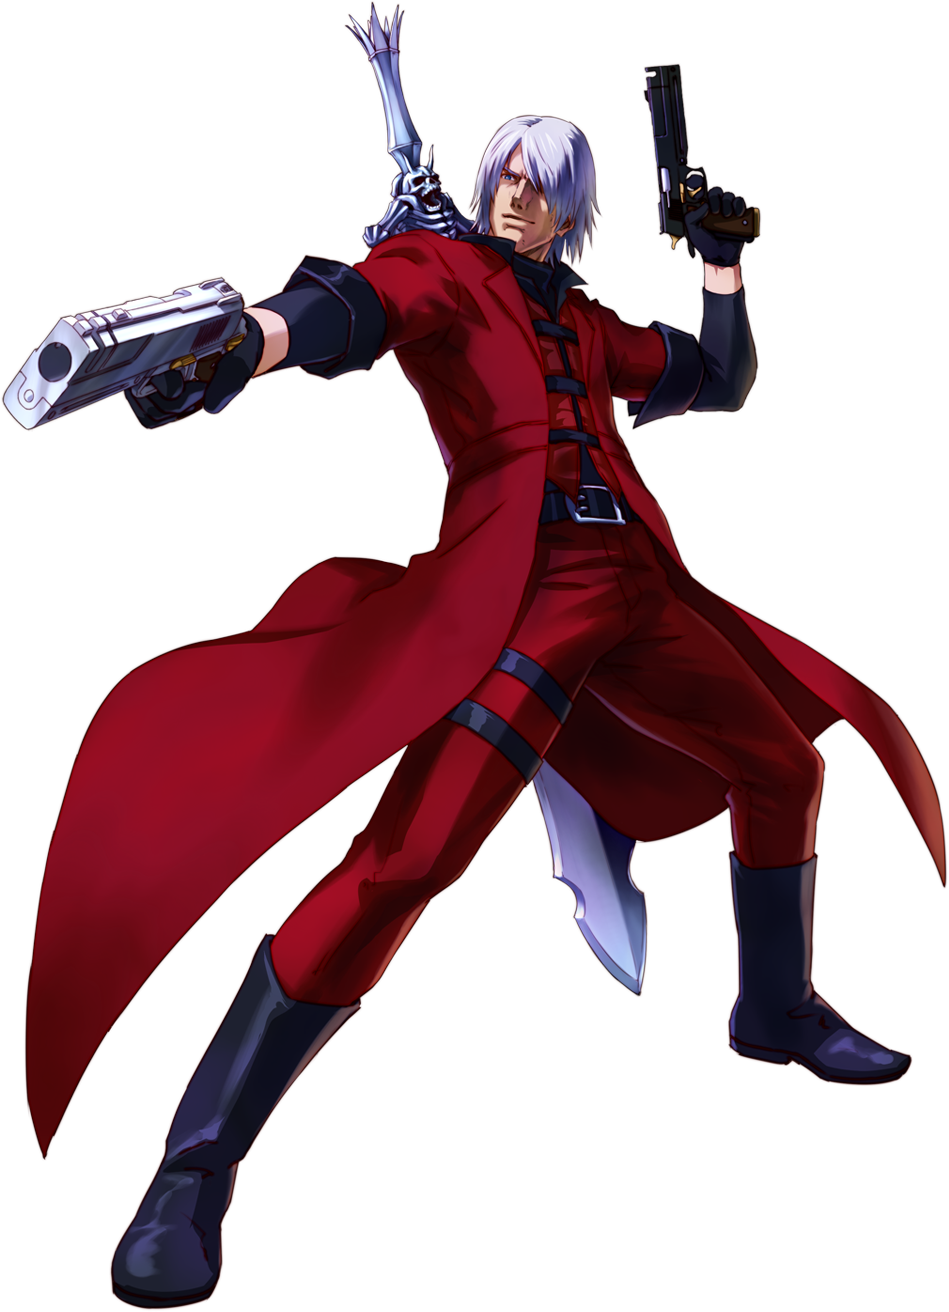 Top 10 Tekken 8 wish characters by Dante-564 on DeviantArt